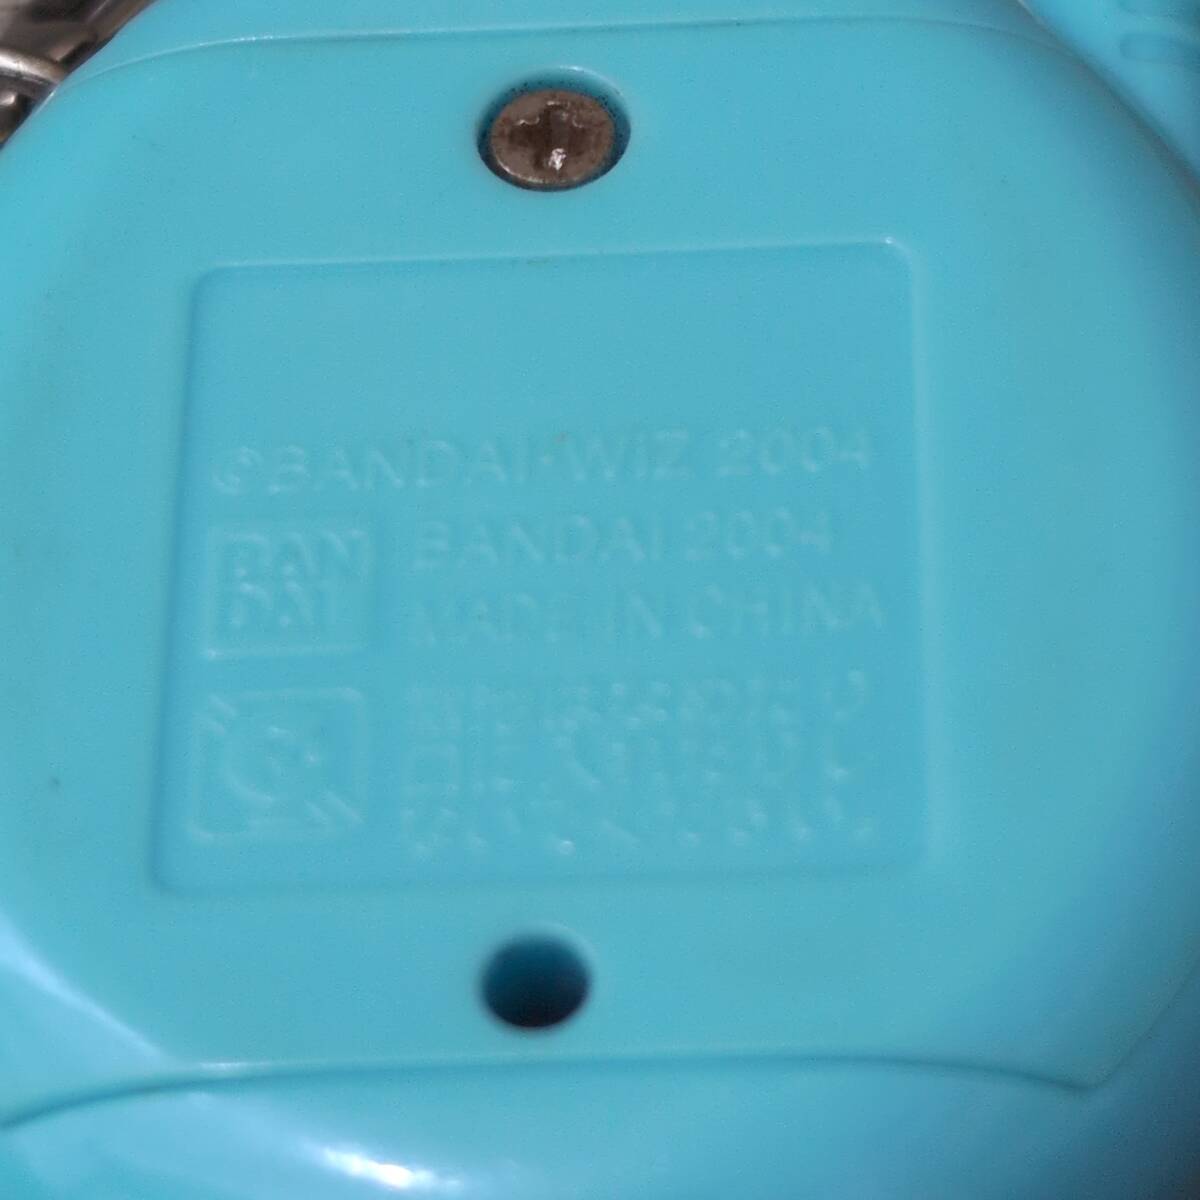 【玩具】 たまごっちプラス 2004年 ブルー 青 水色 BANDAI バンダイ レトロ 大人気 デジタルペット 携帯ゲーム 電子ペット の画像4